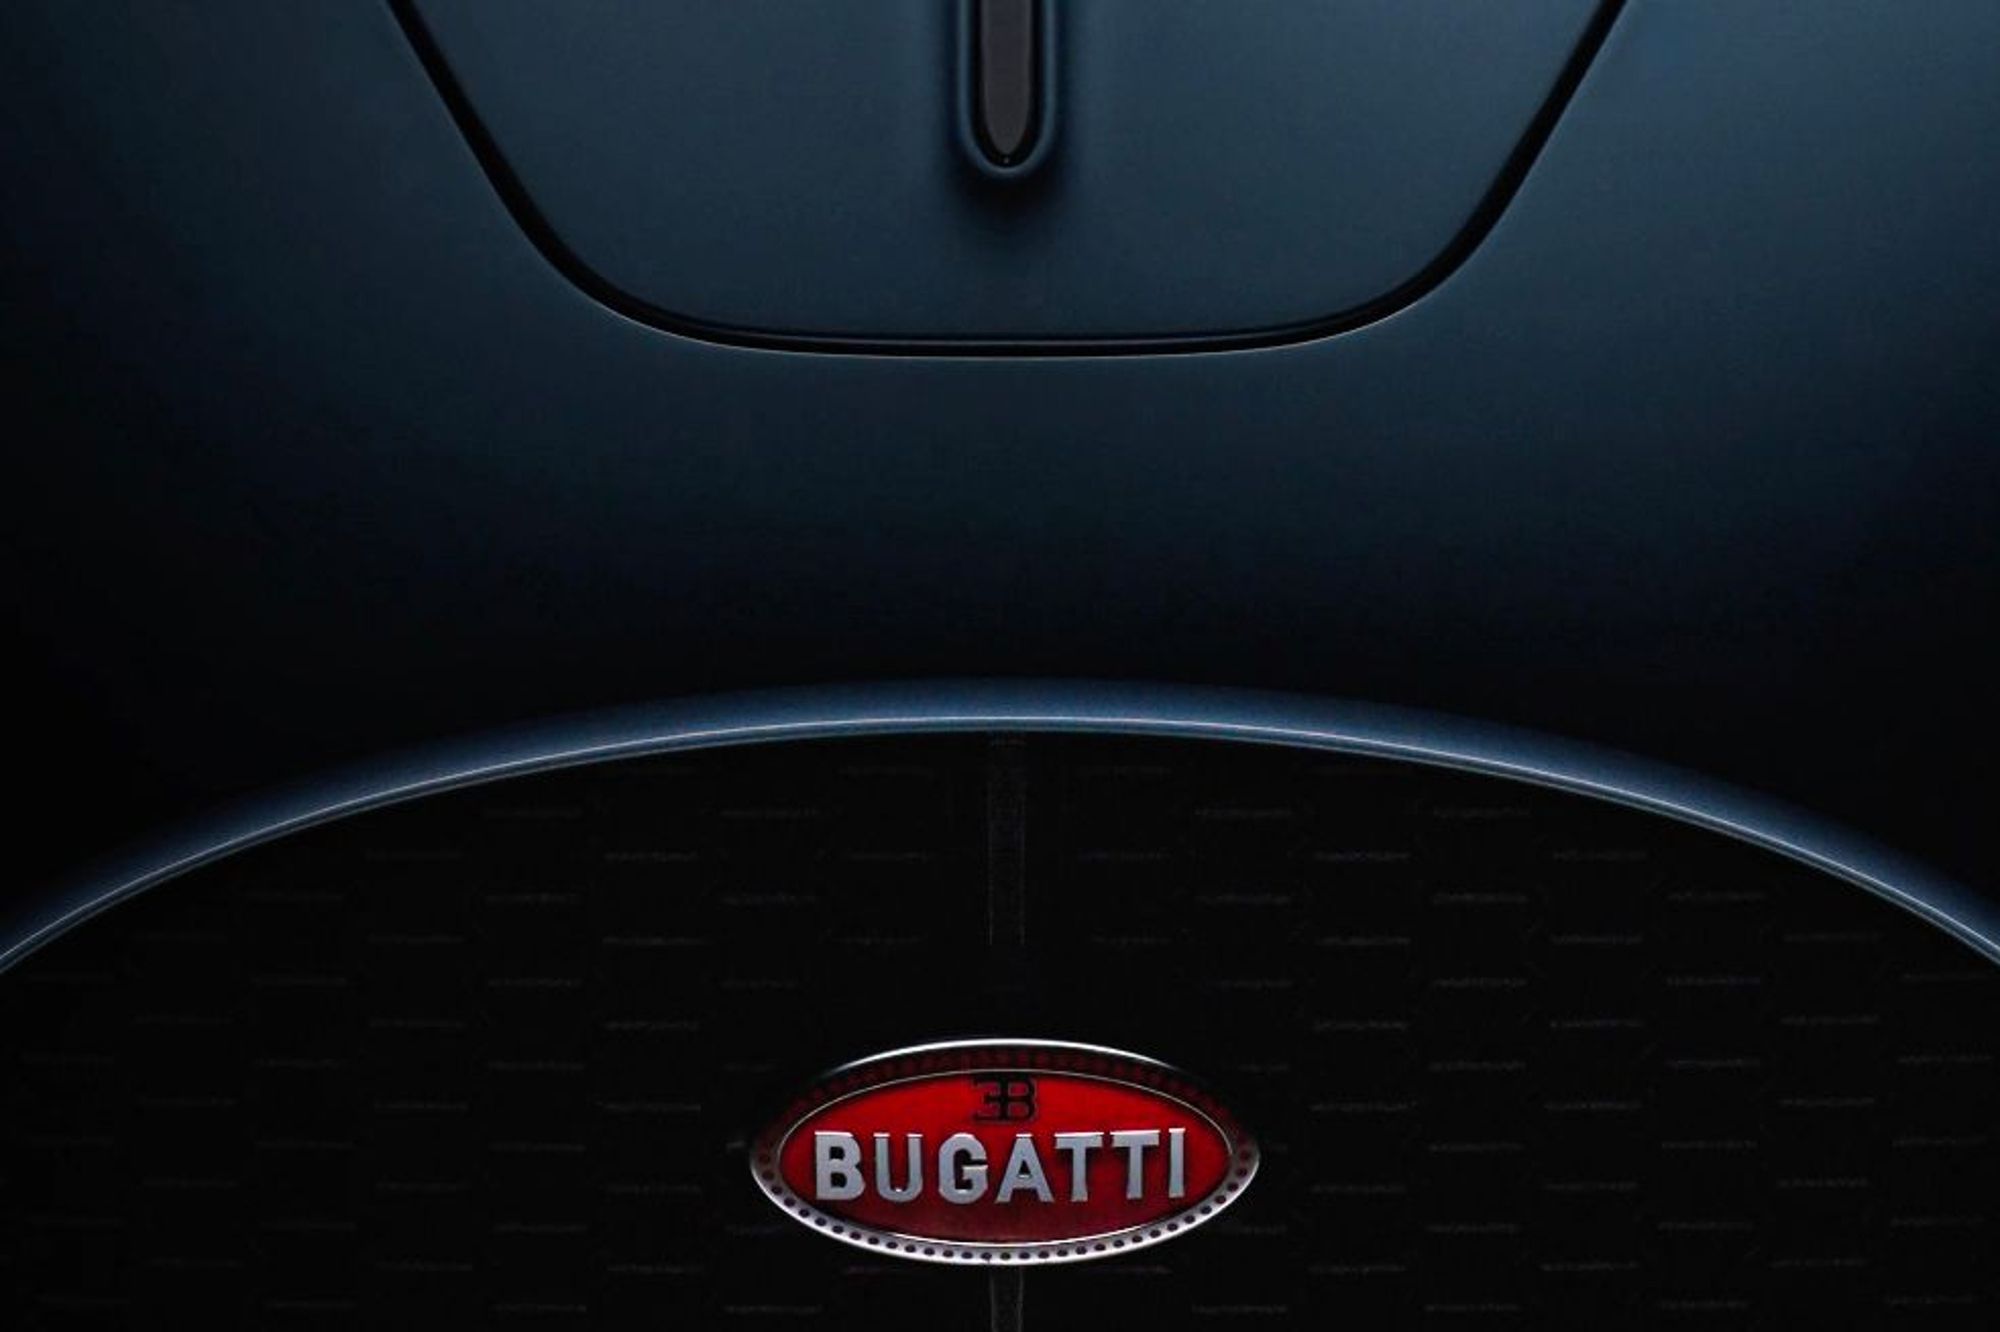 Bugatti hypercar hood with logo.